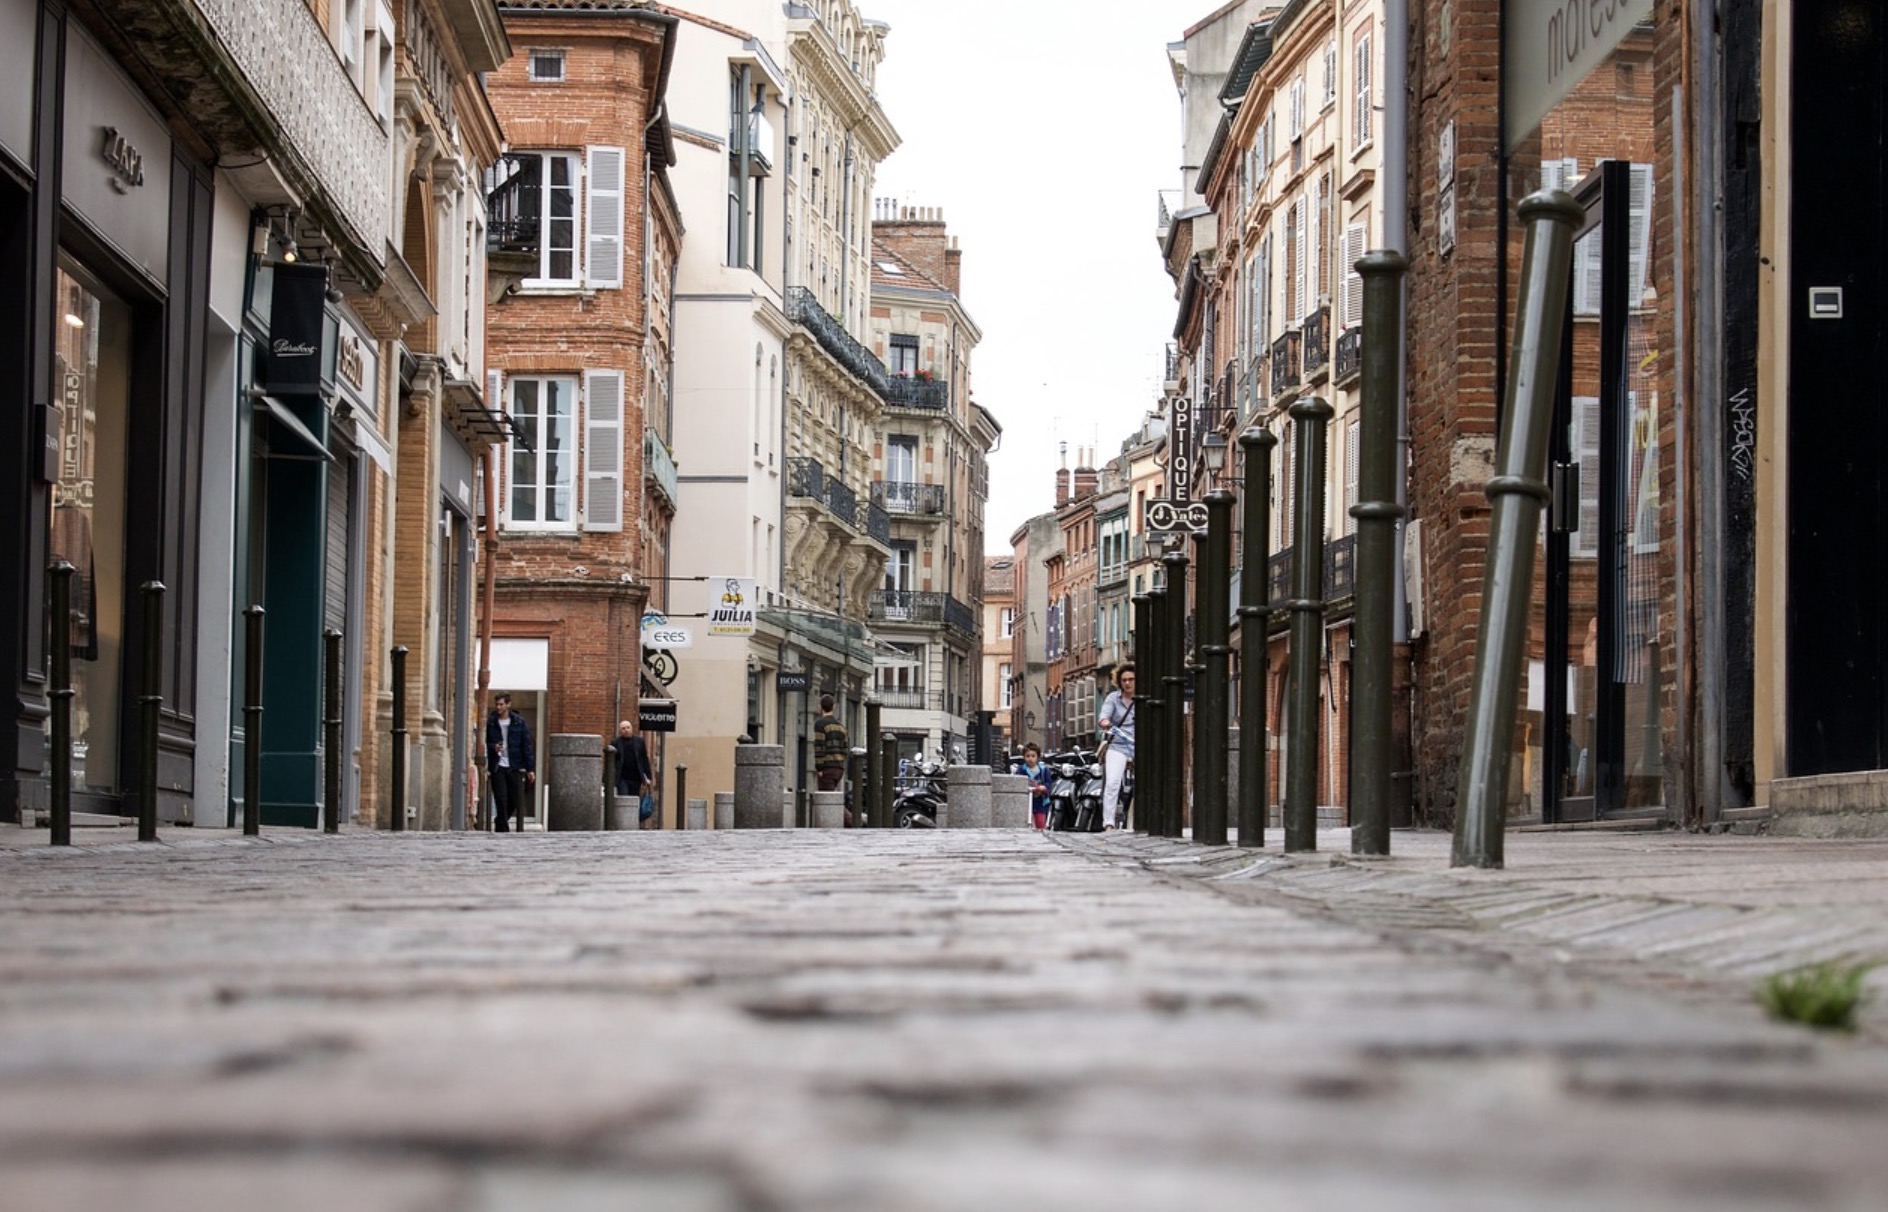 Achat d’une maison à Toulouse : certains quartiers sont plus intéressants